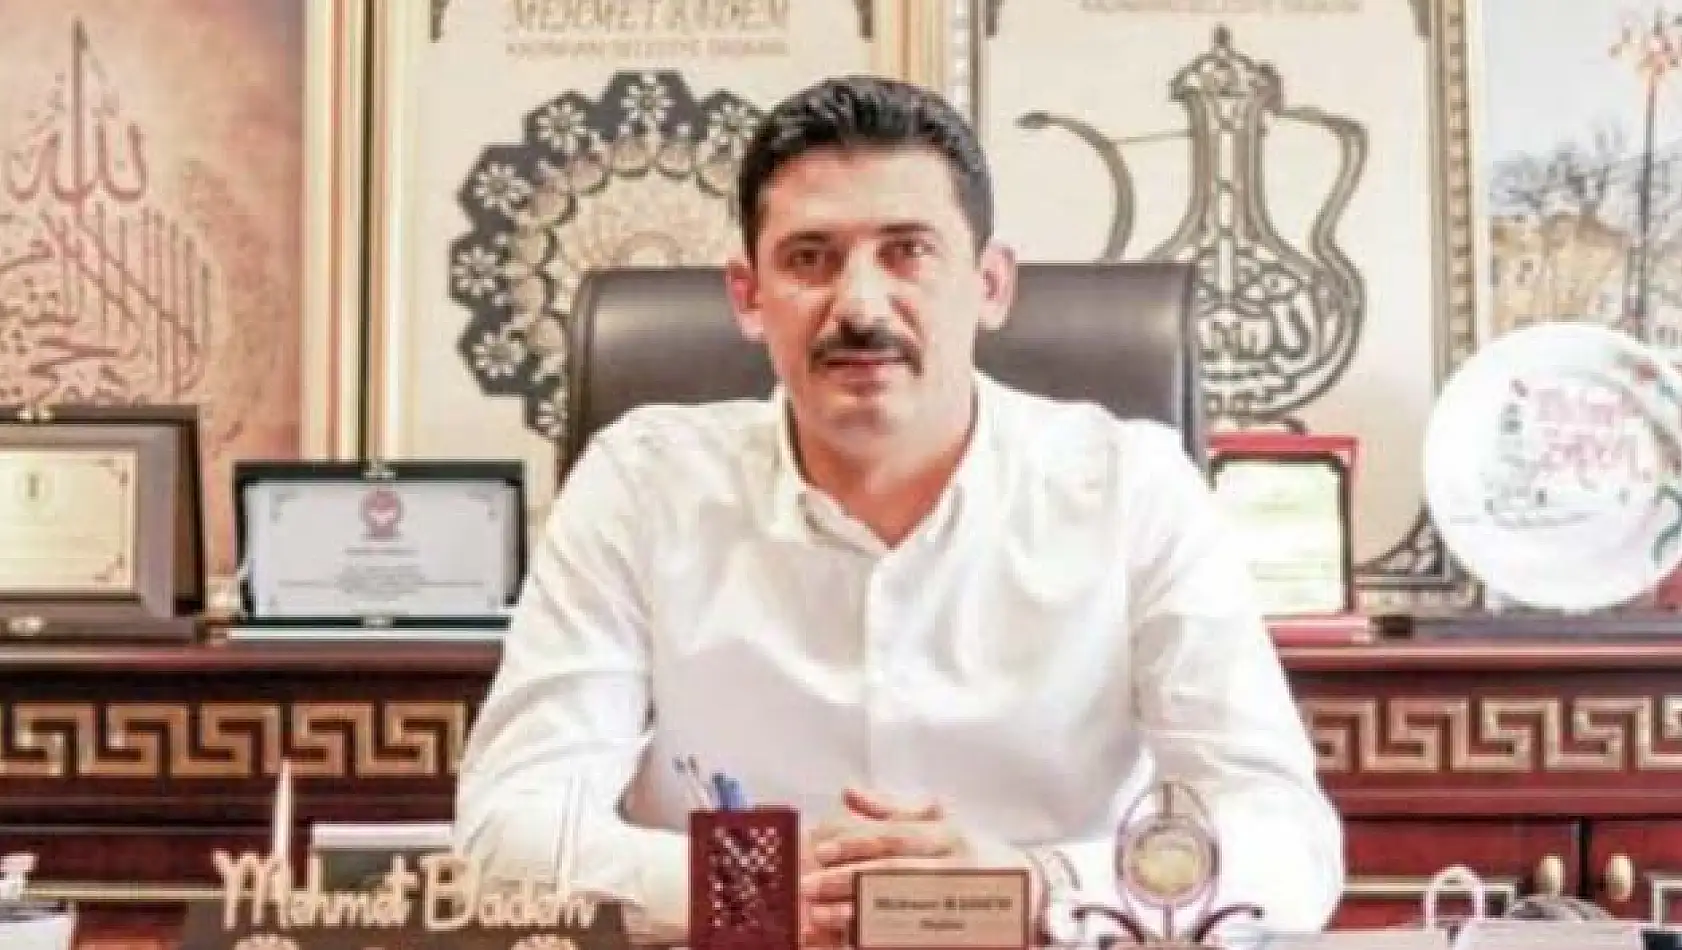 Kadınhanı Belediye Başkanı Mehmet Bademe Ulaşmak Mucize